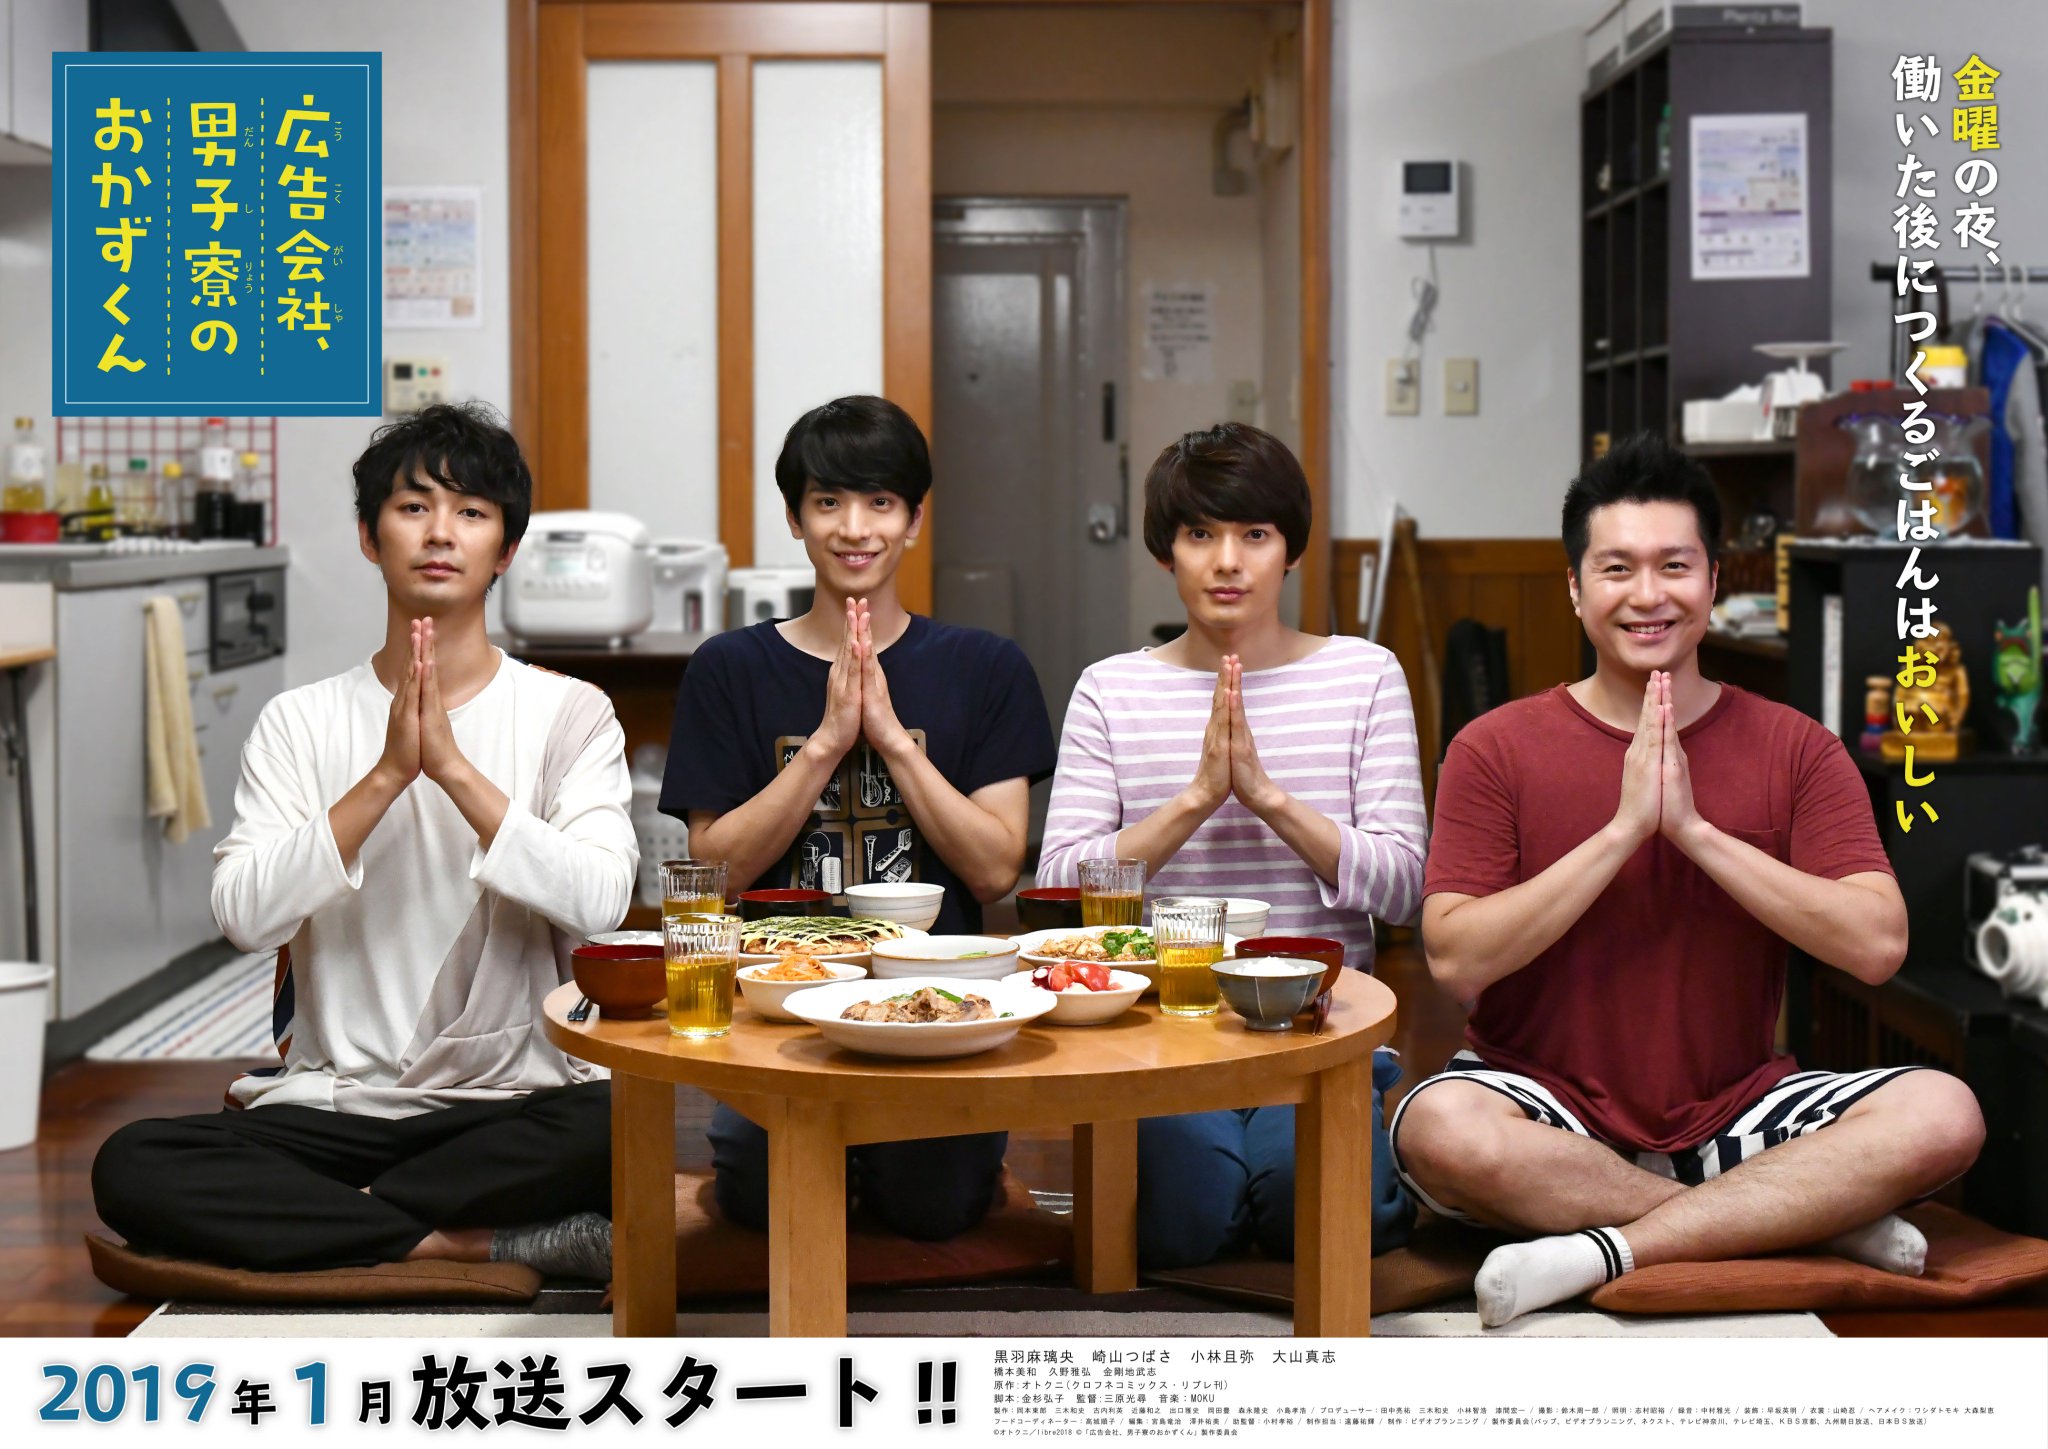 Okazu-kun in the Ad Agency's Men's Dorm (Koukoku Gaisha Danshi Ryou no Okazu-kun)